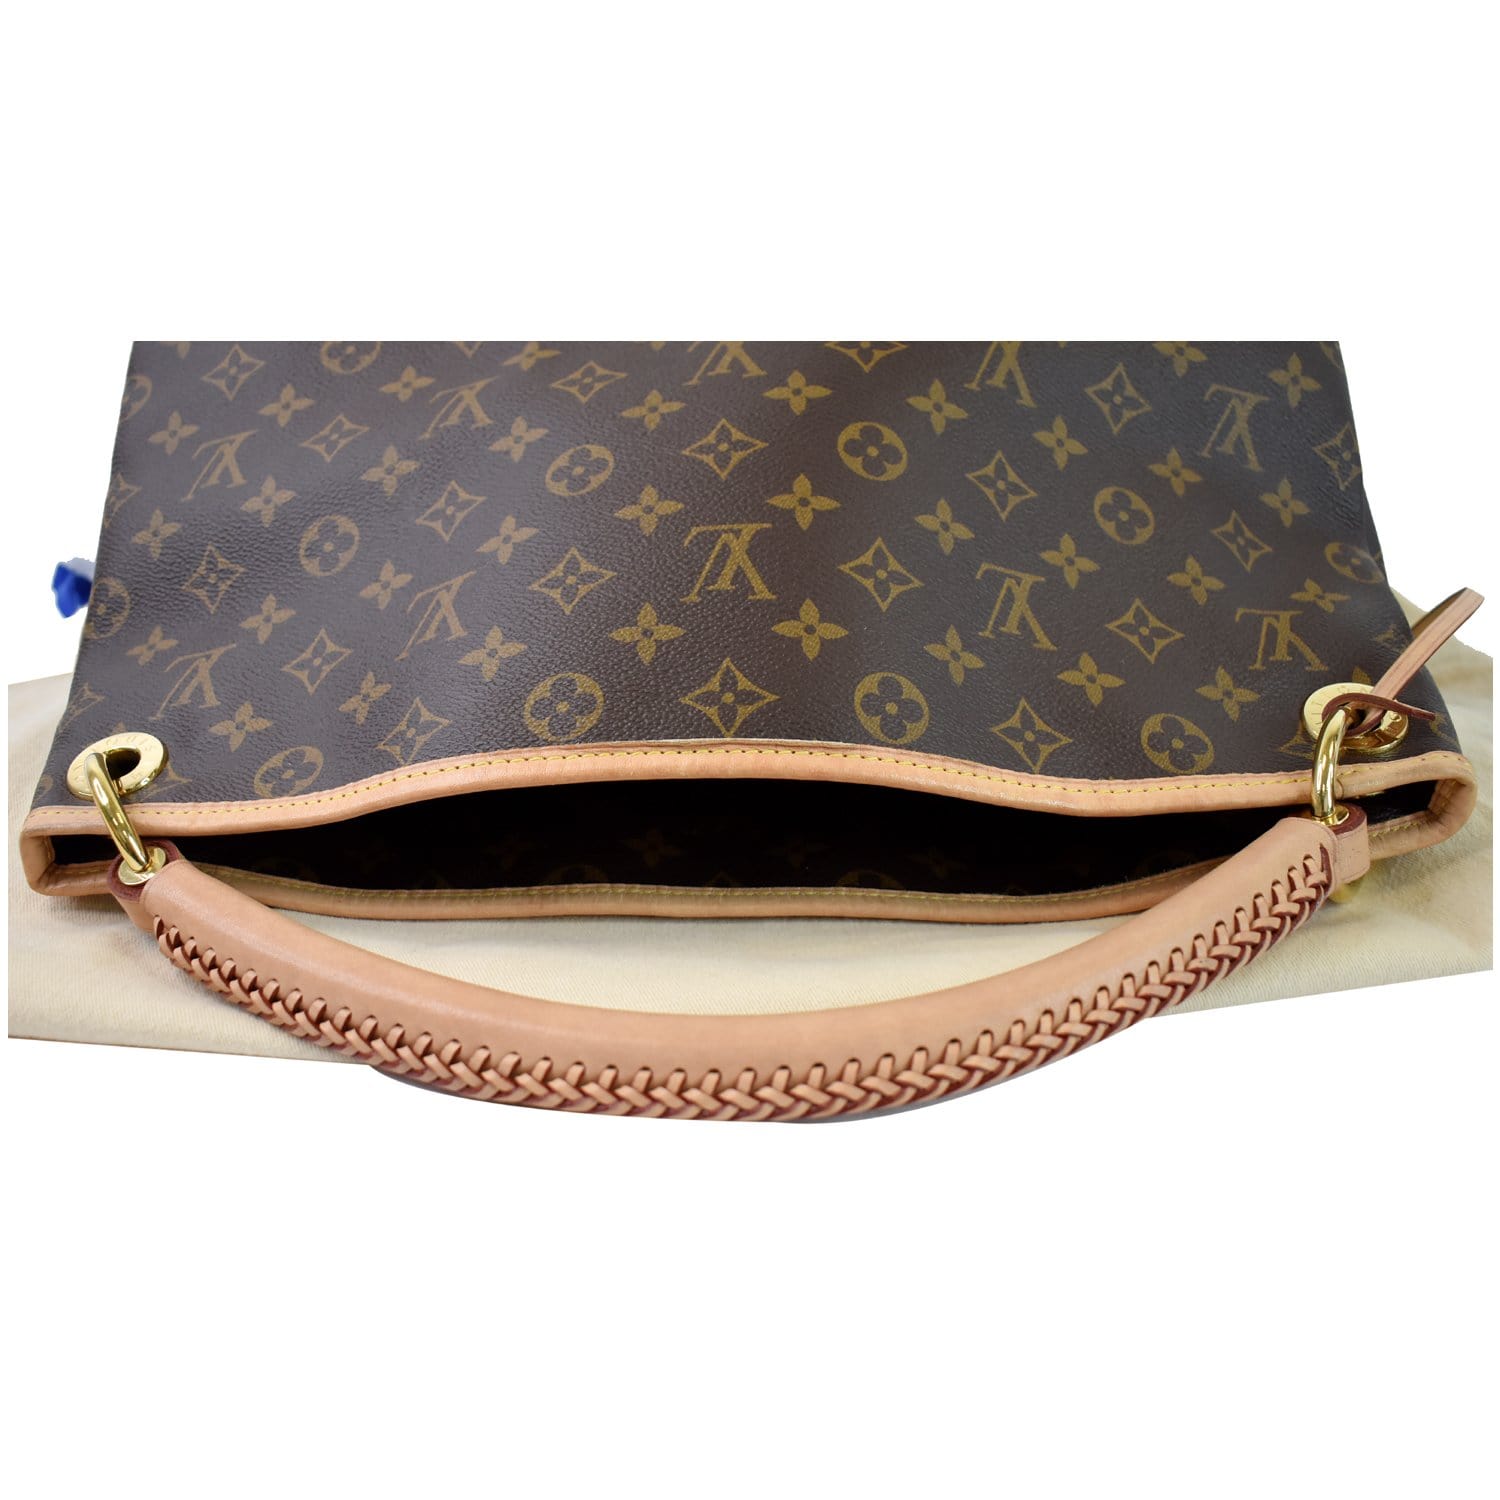 At Auction: Louis Vuitton, Louis Vuitton - Artsy MM in Monogram Canvas -  Brown Shoulder Bag